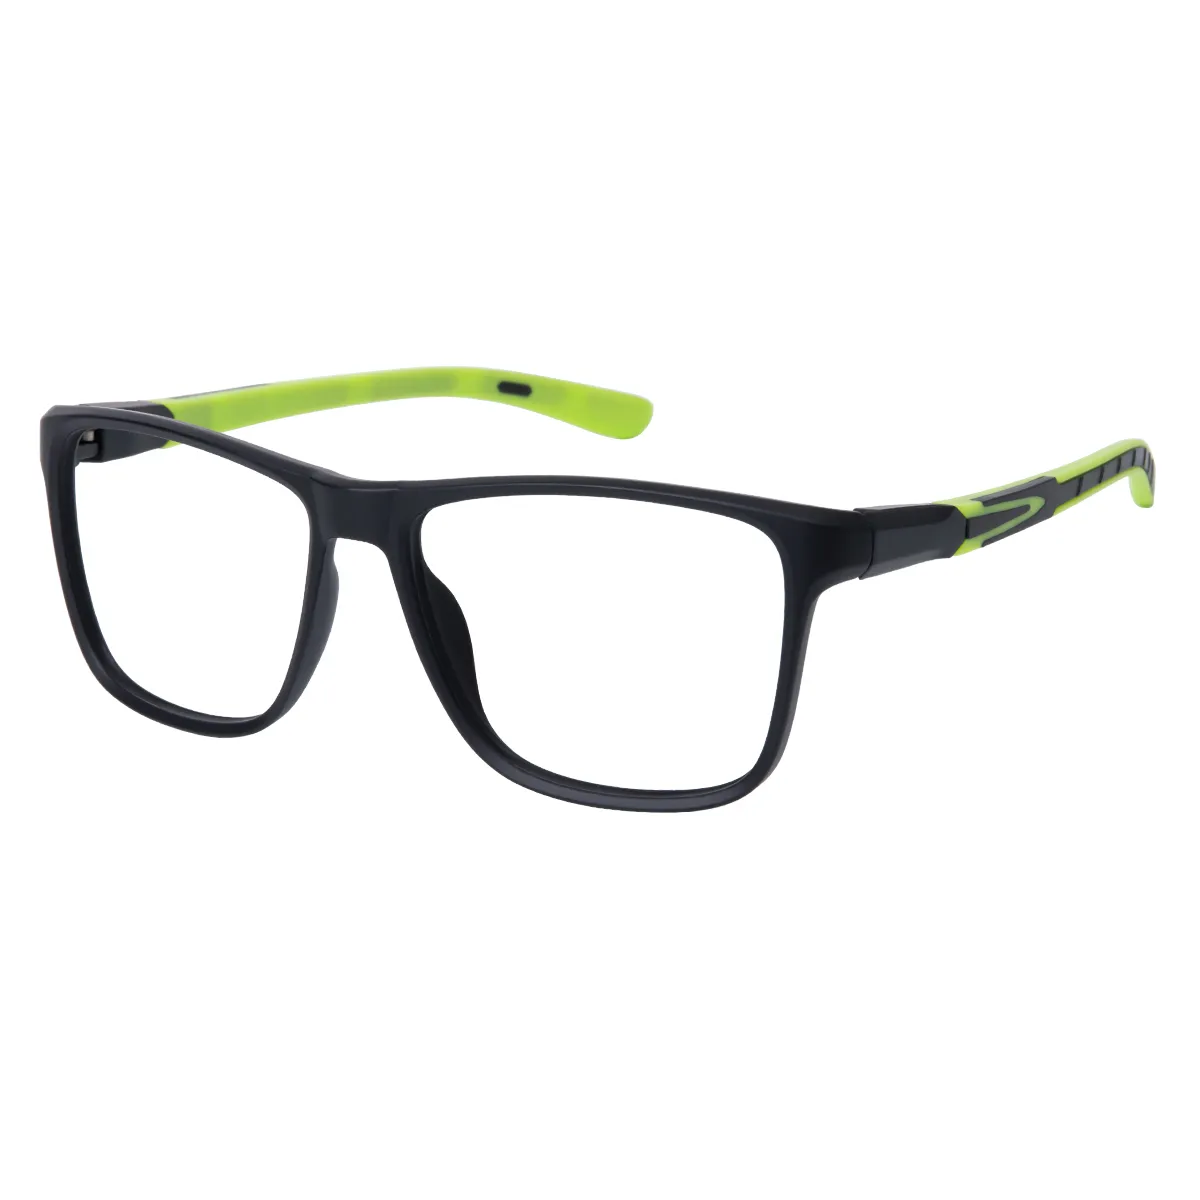 Casper - Rectangle Black-Green Glasses for Men